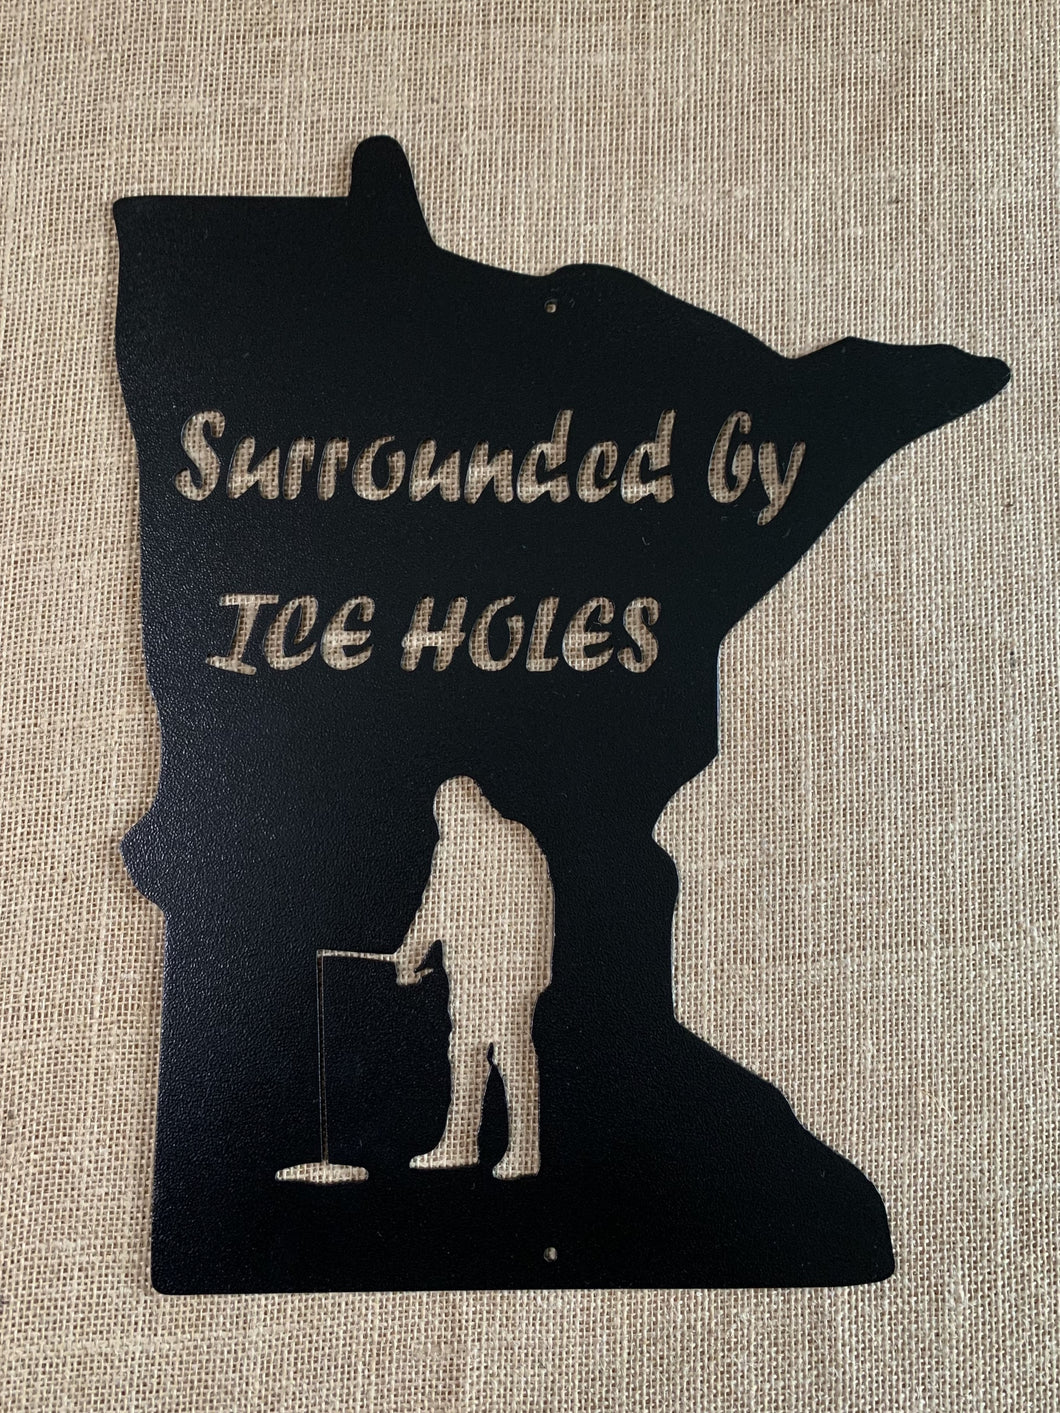 Minnesota Ice Holes